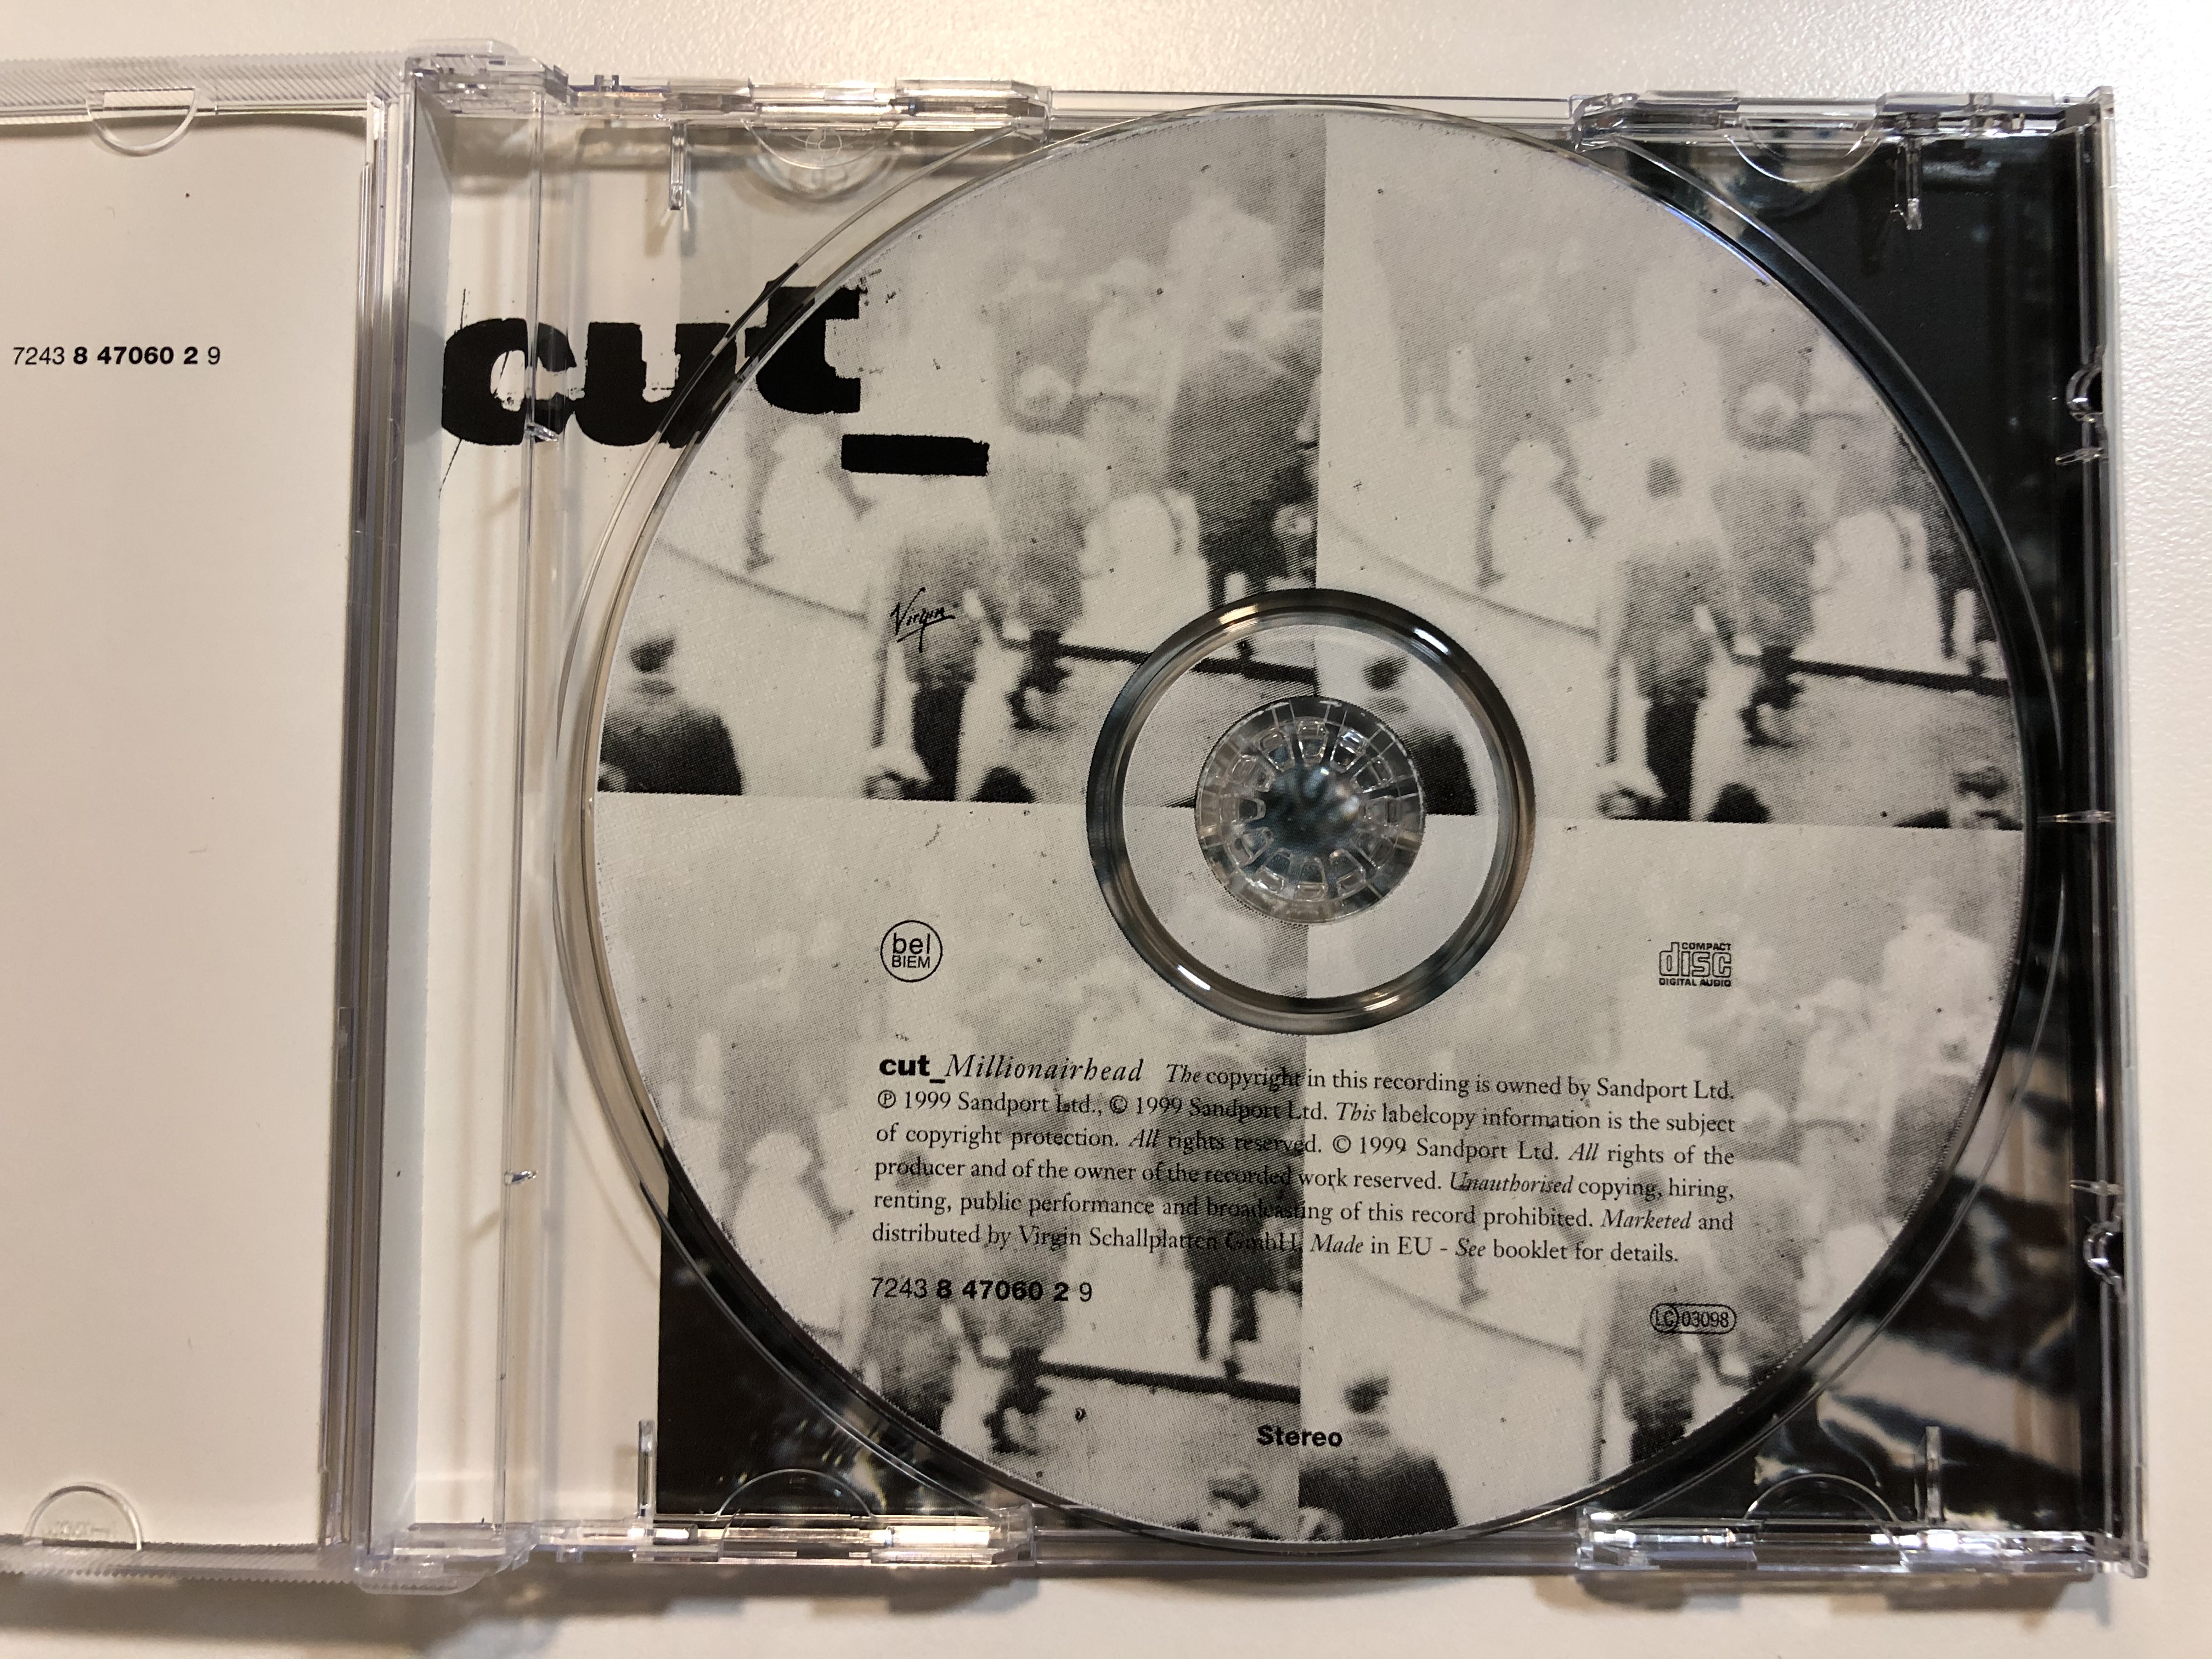 cut-millionairhead-virgin-audio-cd-1999-724384706029-5-.jpg